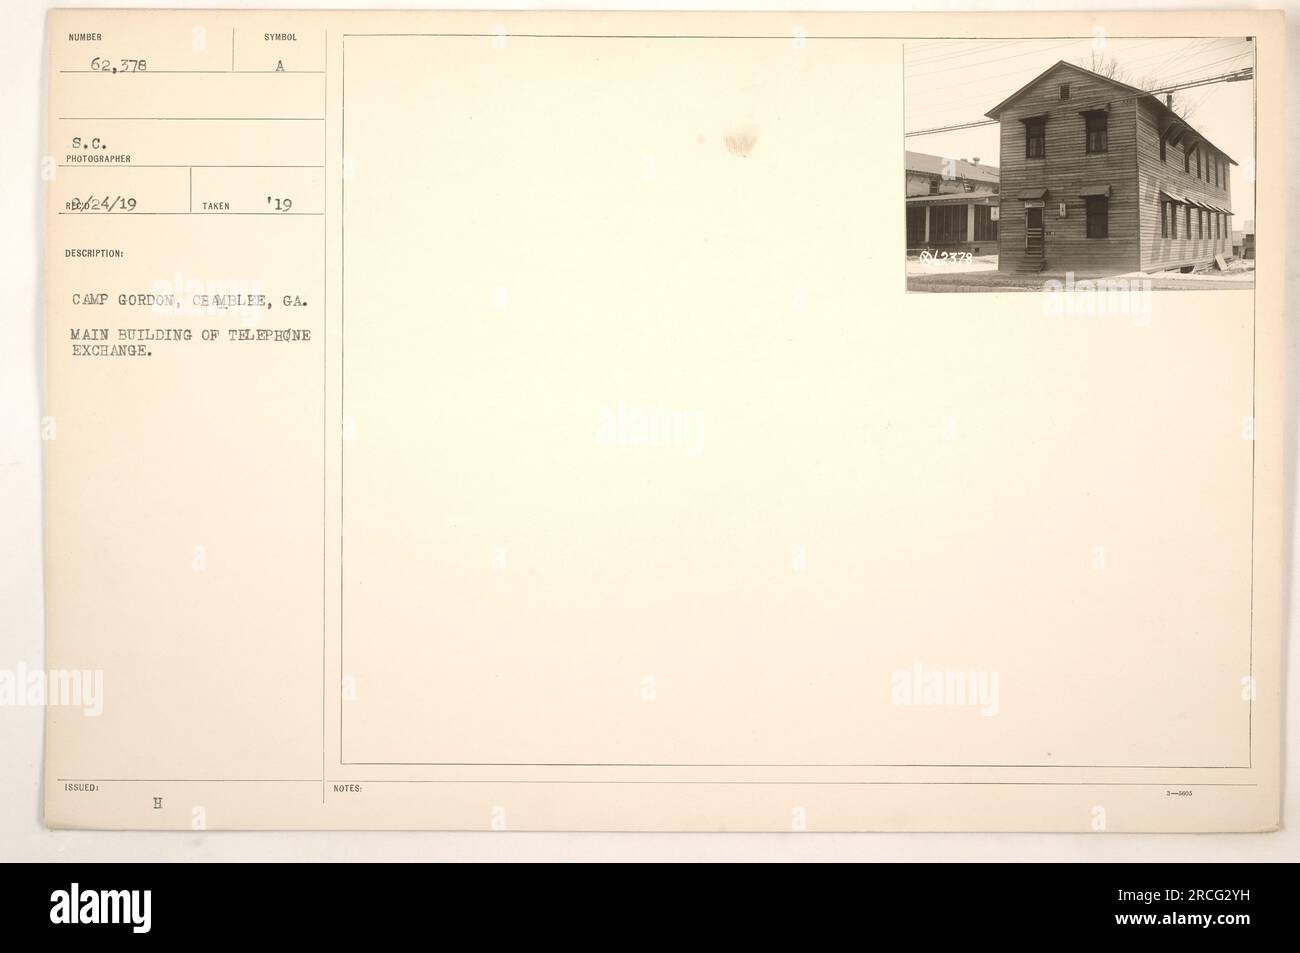 Edificio principal de intercambio telefónico en Camp Gordon, Chamblee, GA. Esta es una imagen tomada en 1890 y fotografiada por 624/19. La etiqueta de la fotografía dice 12378, rodeada de símbolos y una letra 'H'. Foto de stock